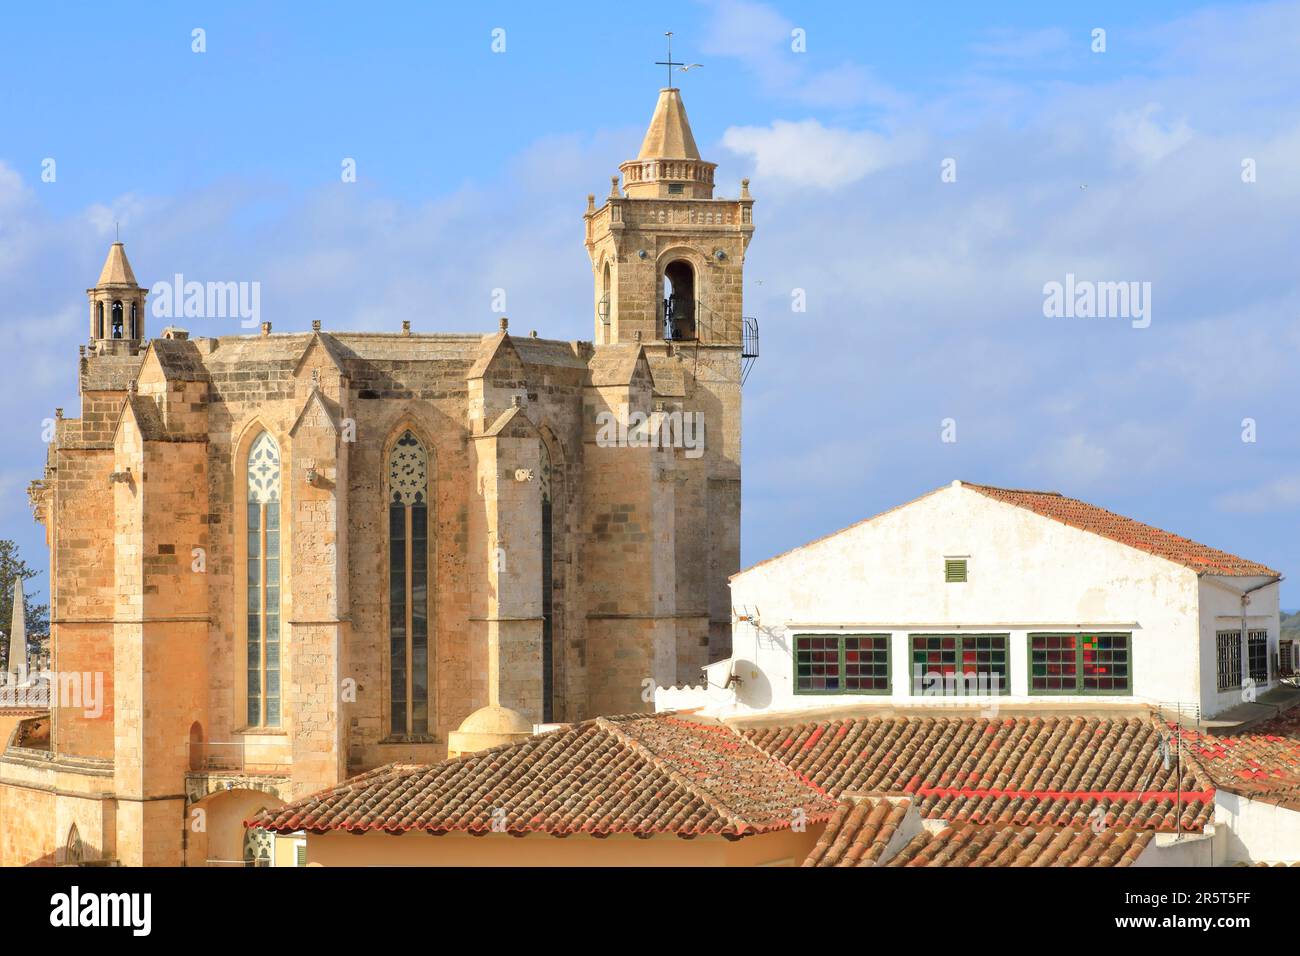 Spagna, Isole Baleari, Minorca, Ciutadella, vista sui tetti della città vecchia e la Cattedrale di Santa Maria del 13th ° secolo (gotico catalano) Foto Stock